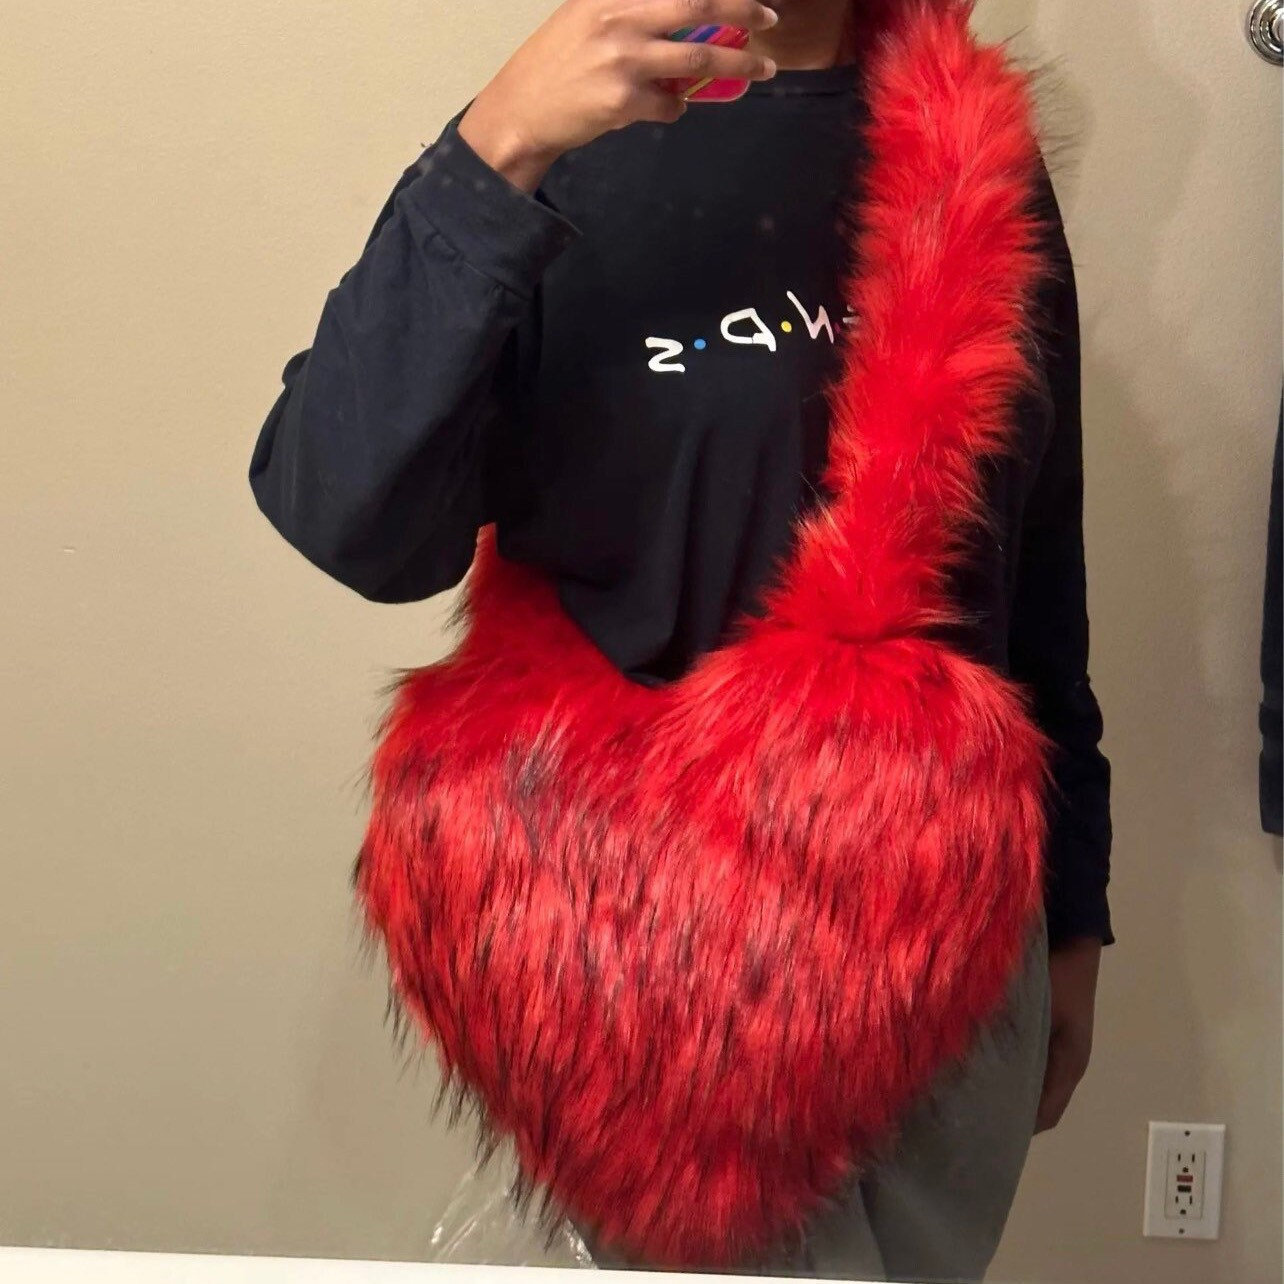 Y2K Fur Heart Bag - Trendy Fashion Accessory for Women